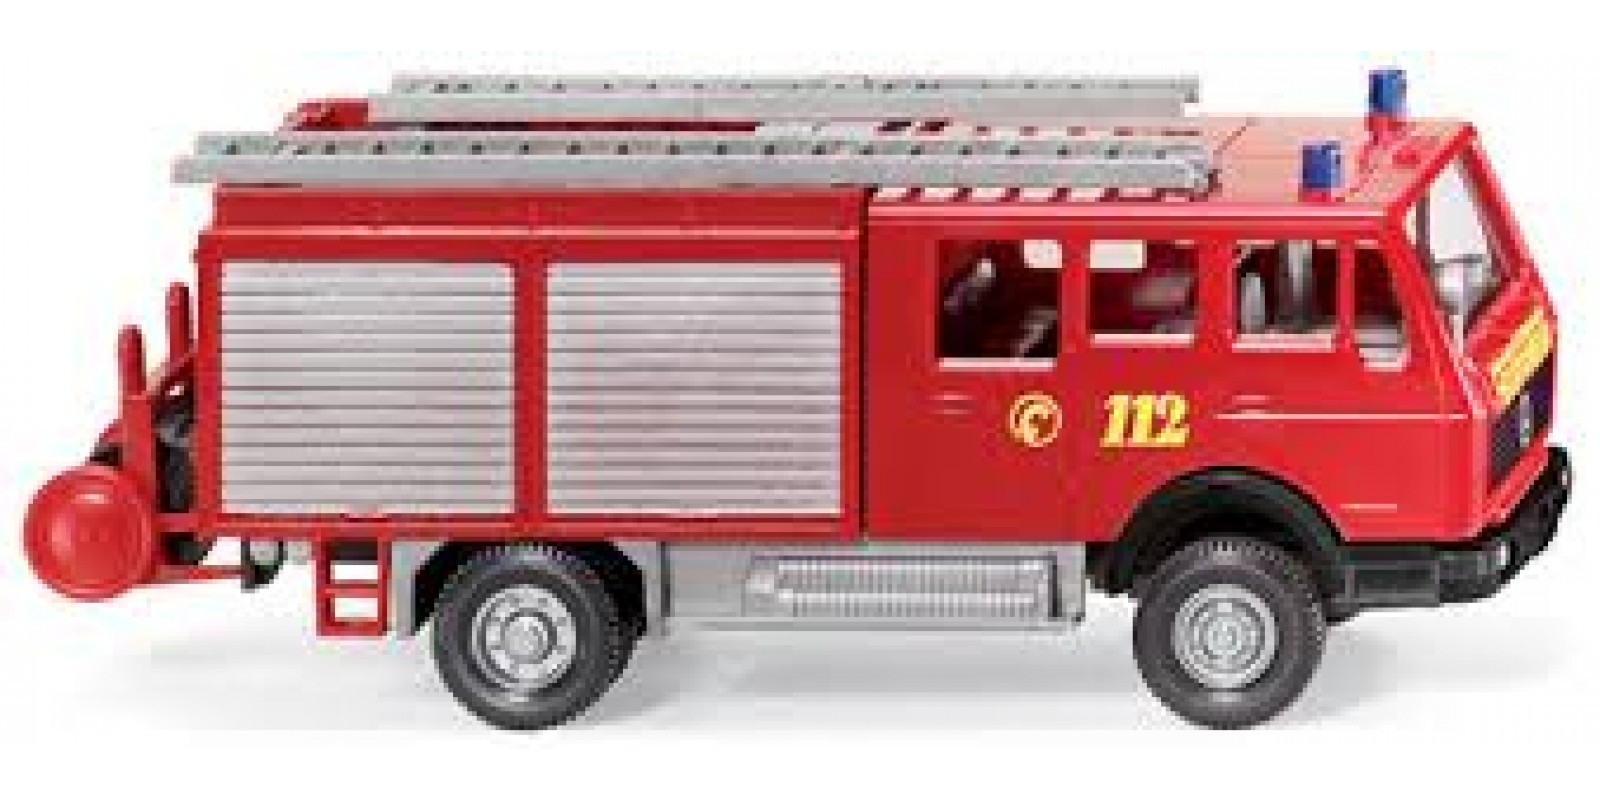 WI61601 Fire service - LF16 (MB)